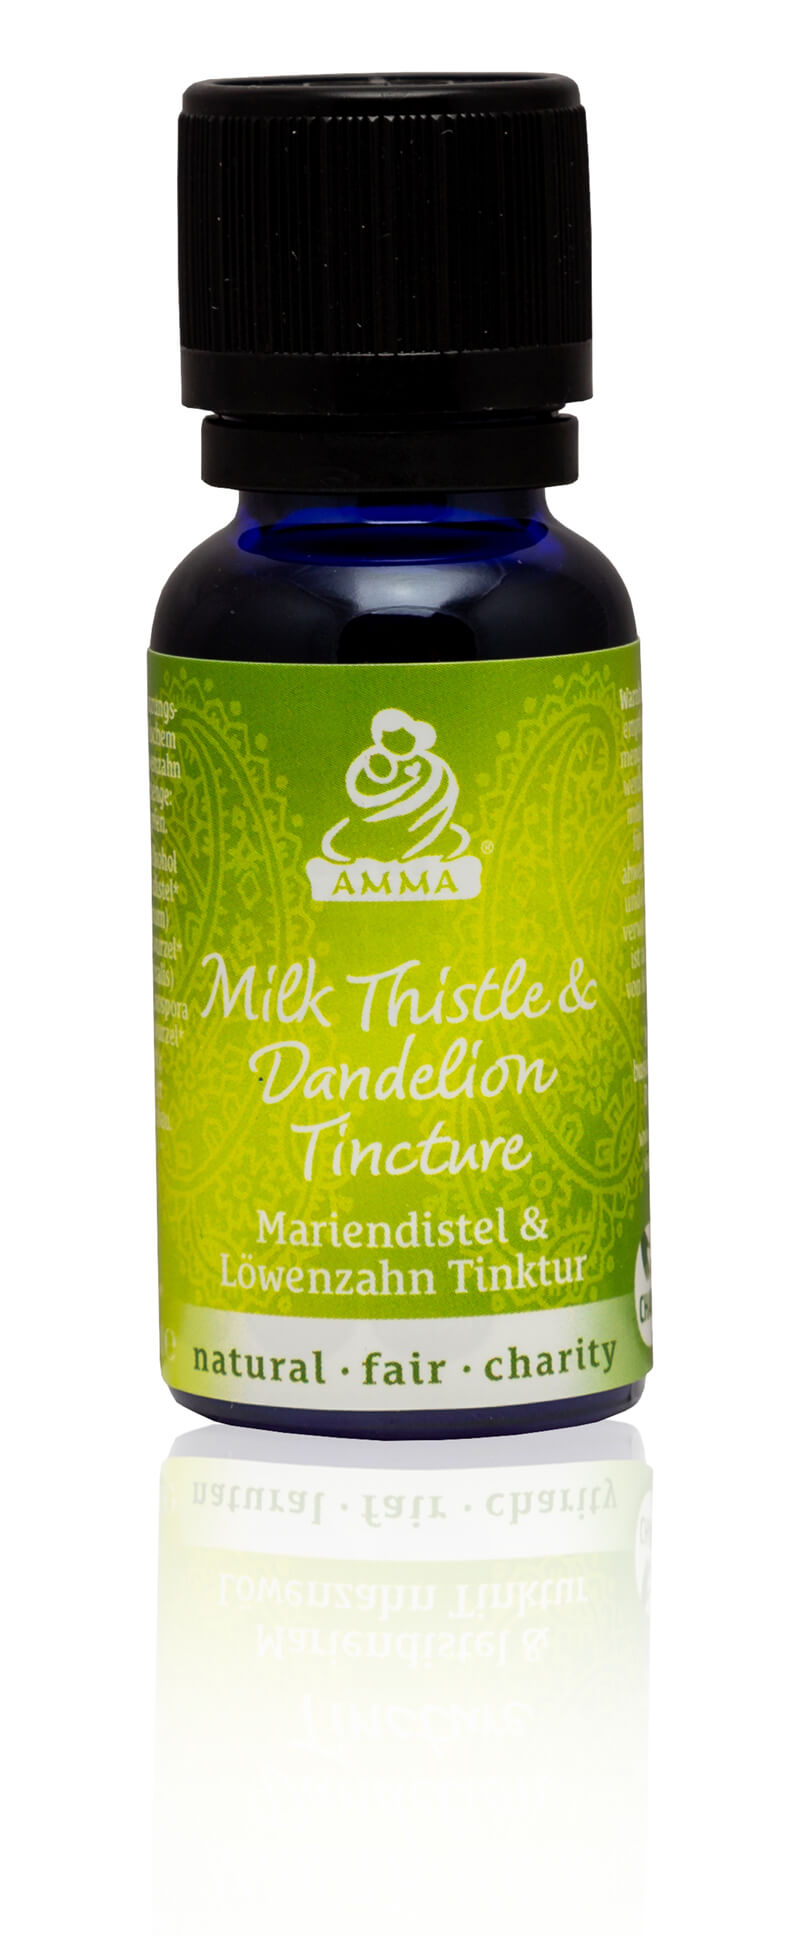 Milk Thistle & Dandelion Tincture, organic